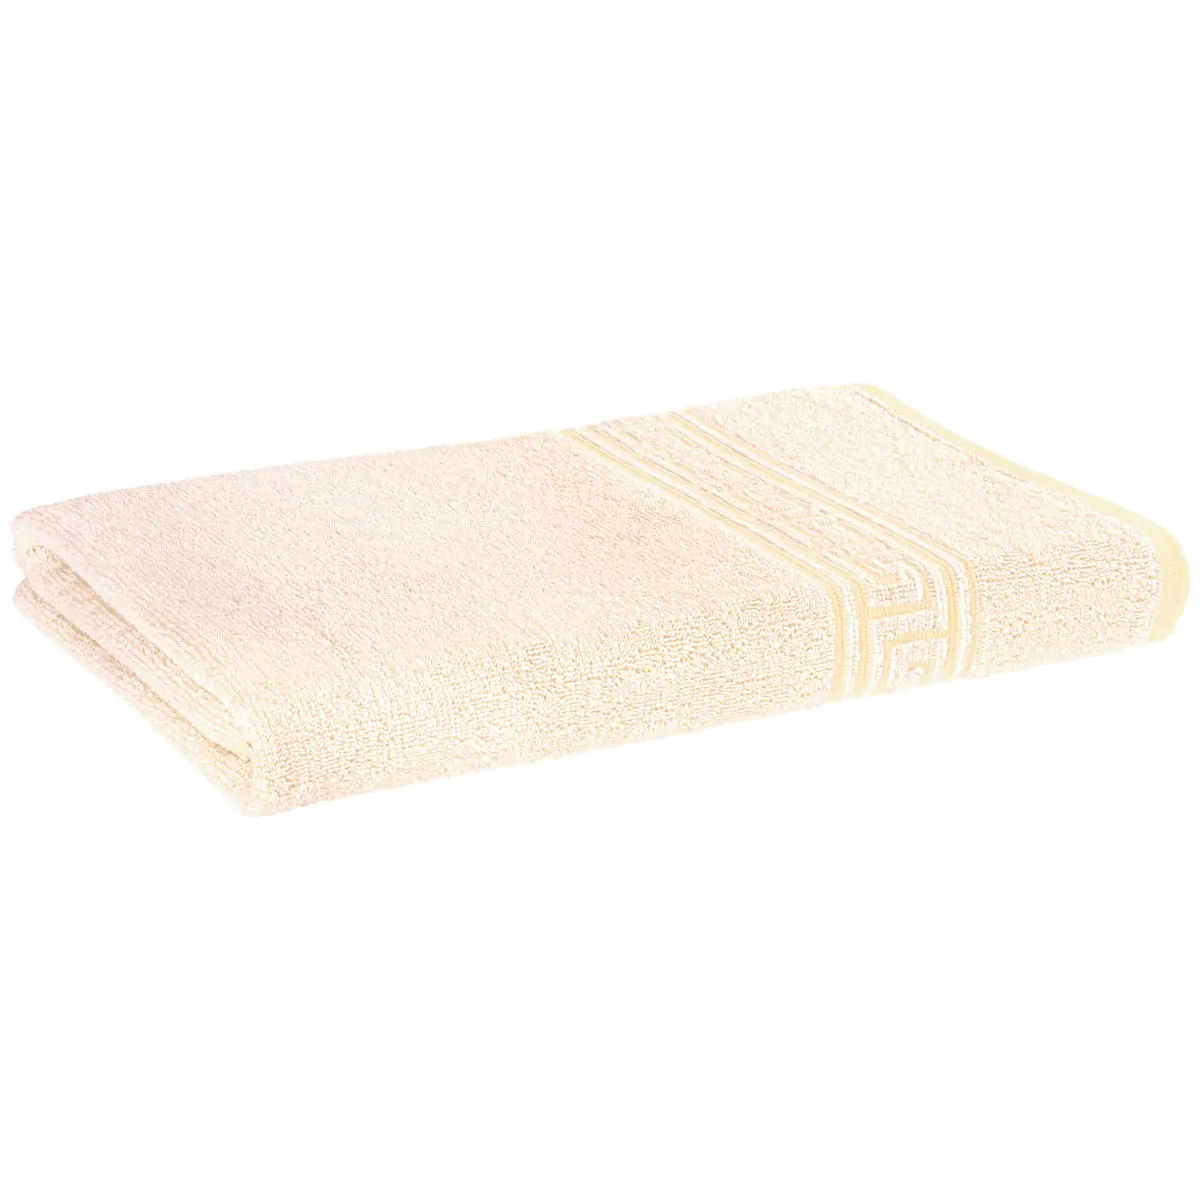 Asciugamano Atene ; 50x100 cm (LxL); albicocca; 10 pz. / confezione